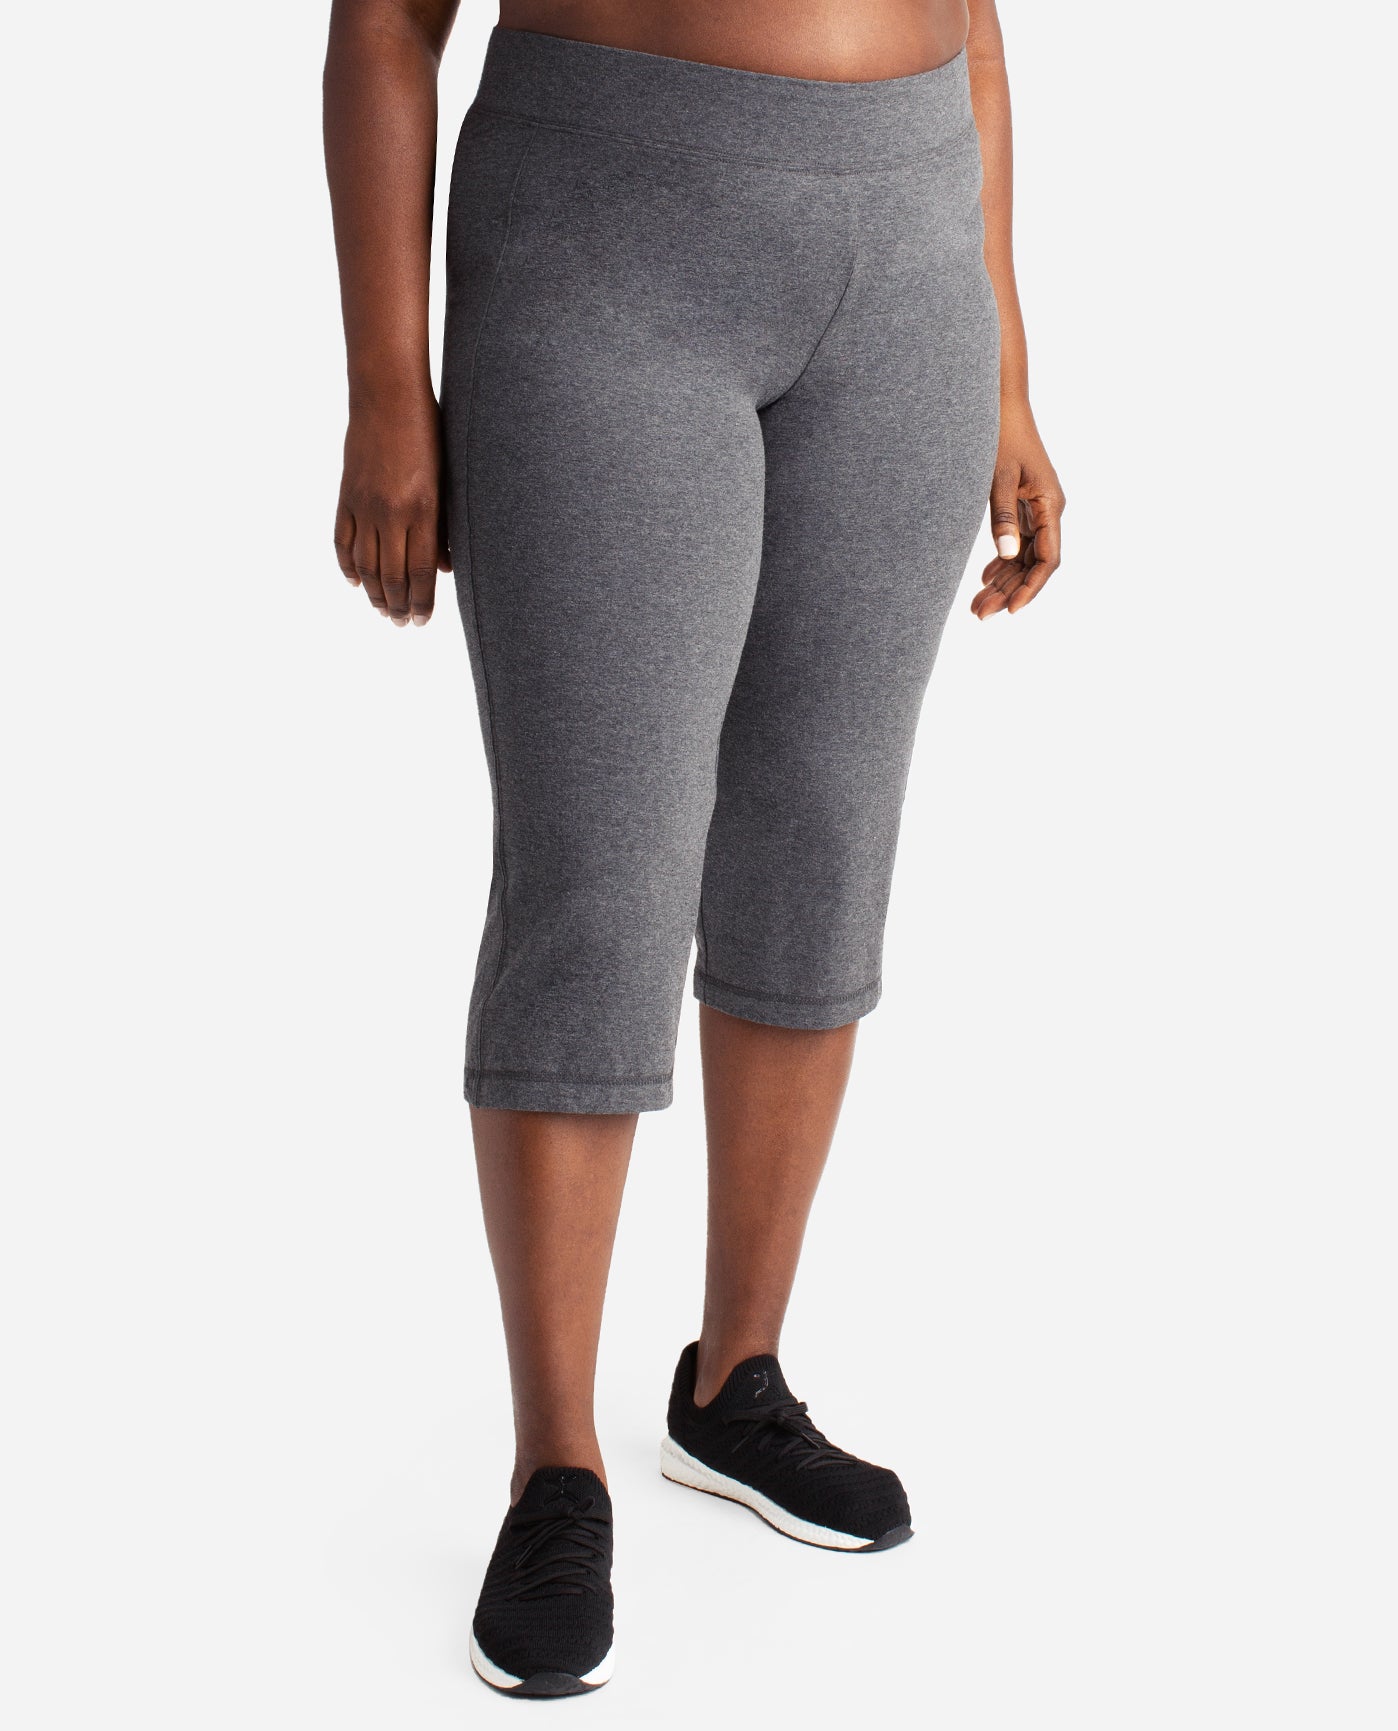 Danskin Womens Athleisure Sleek Fit Crop Yoga Pants  Walmartcom